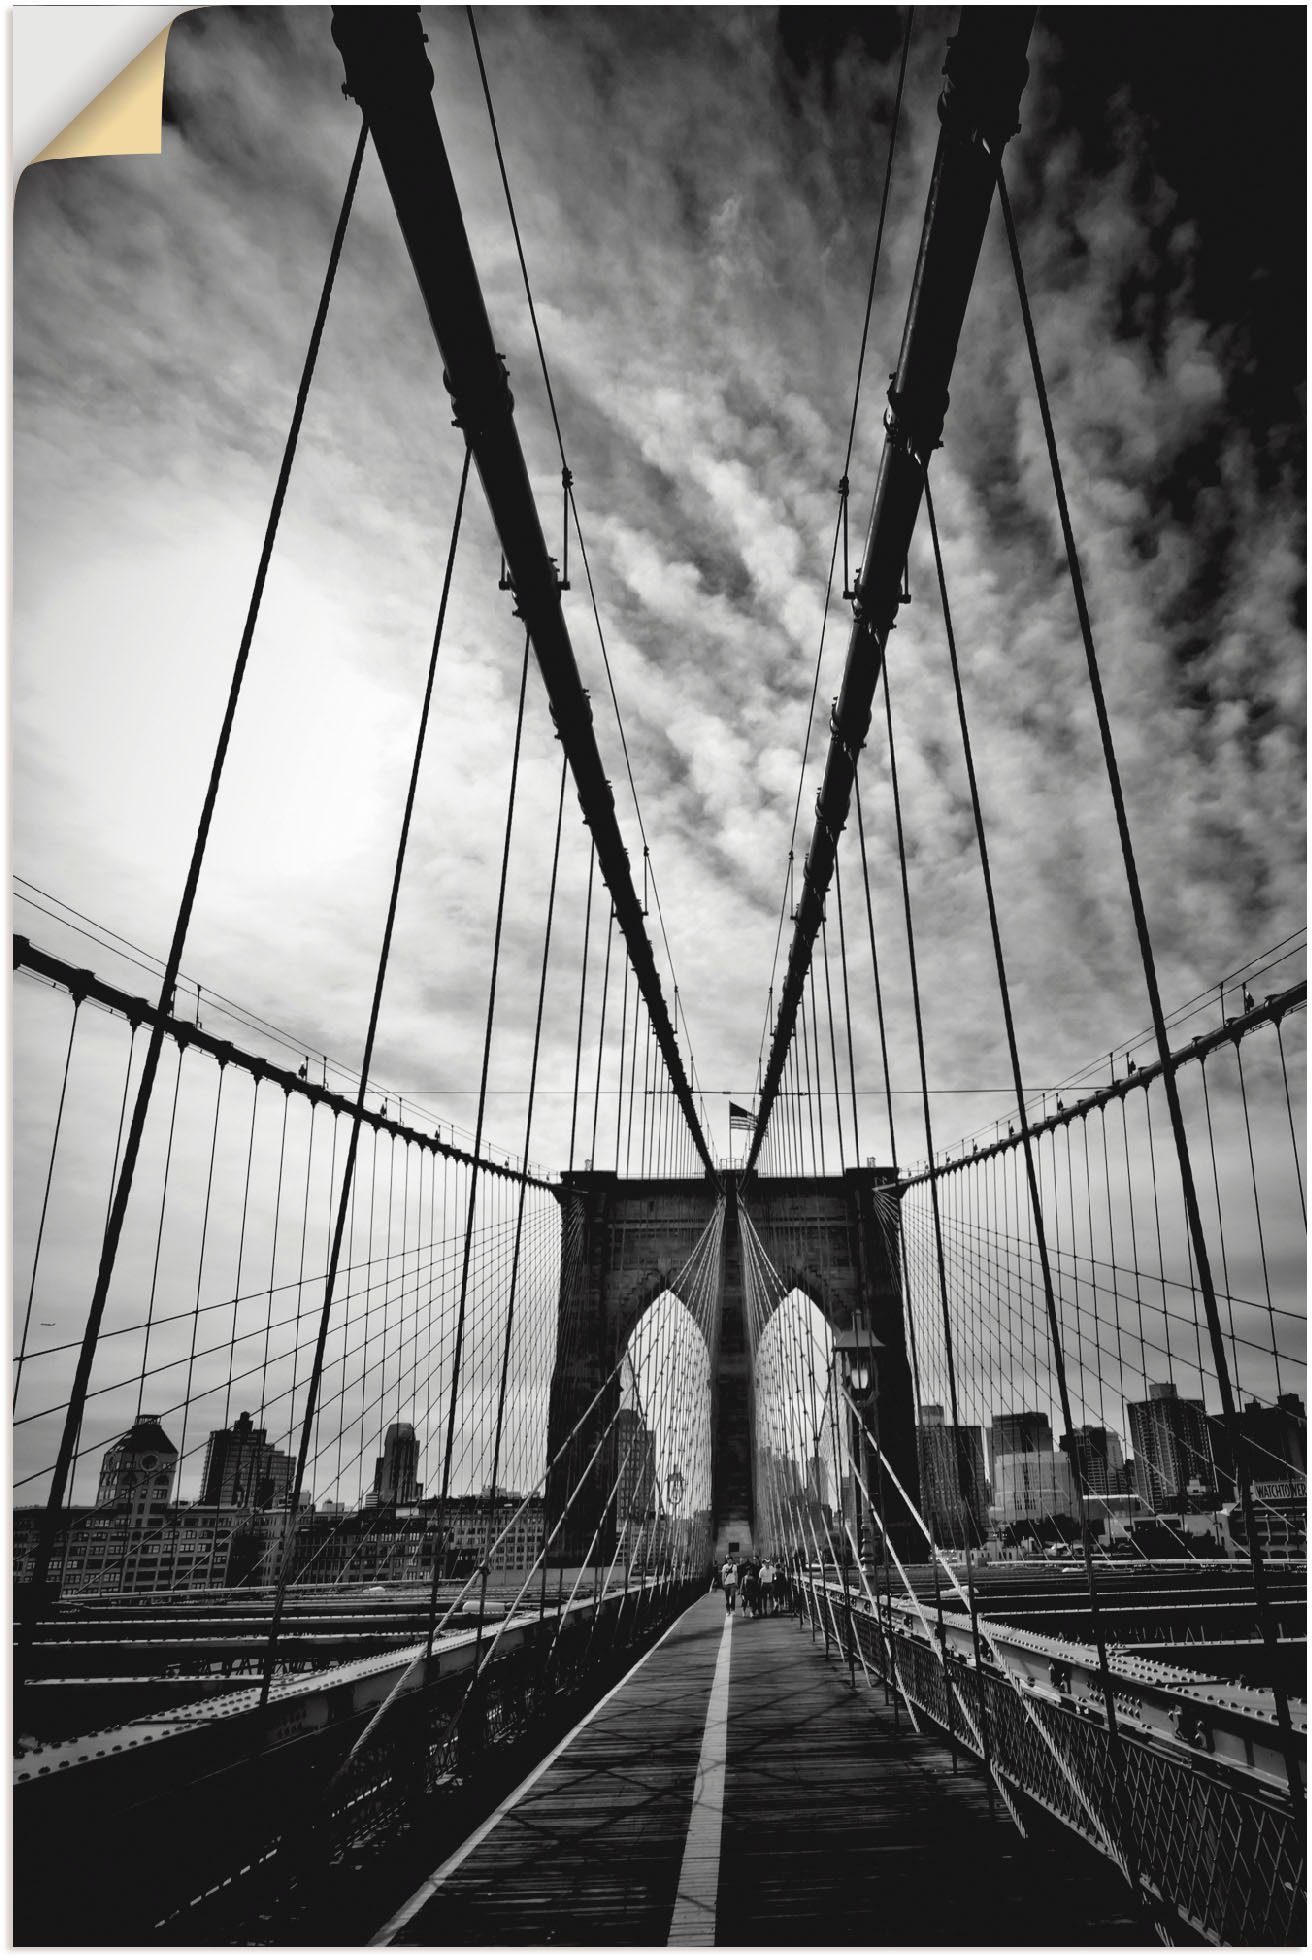 Artland Artprint New York City Machtige Brooklyn Bridge in vele afmetingen & productsoorten - artprint van aluminium / artprint voor buiten, artprint op linnen, poster, muursticker